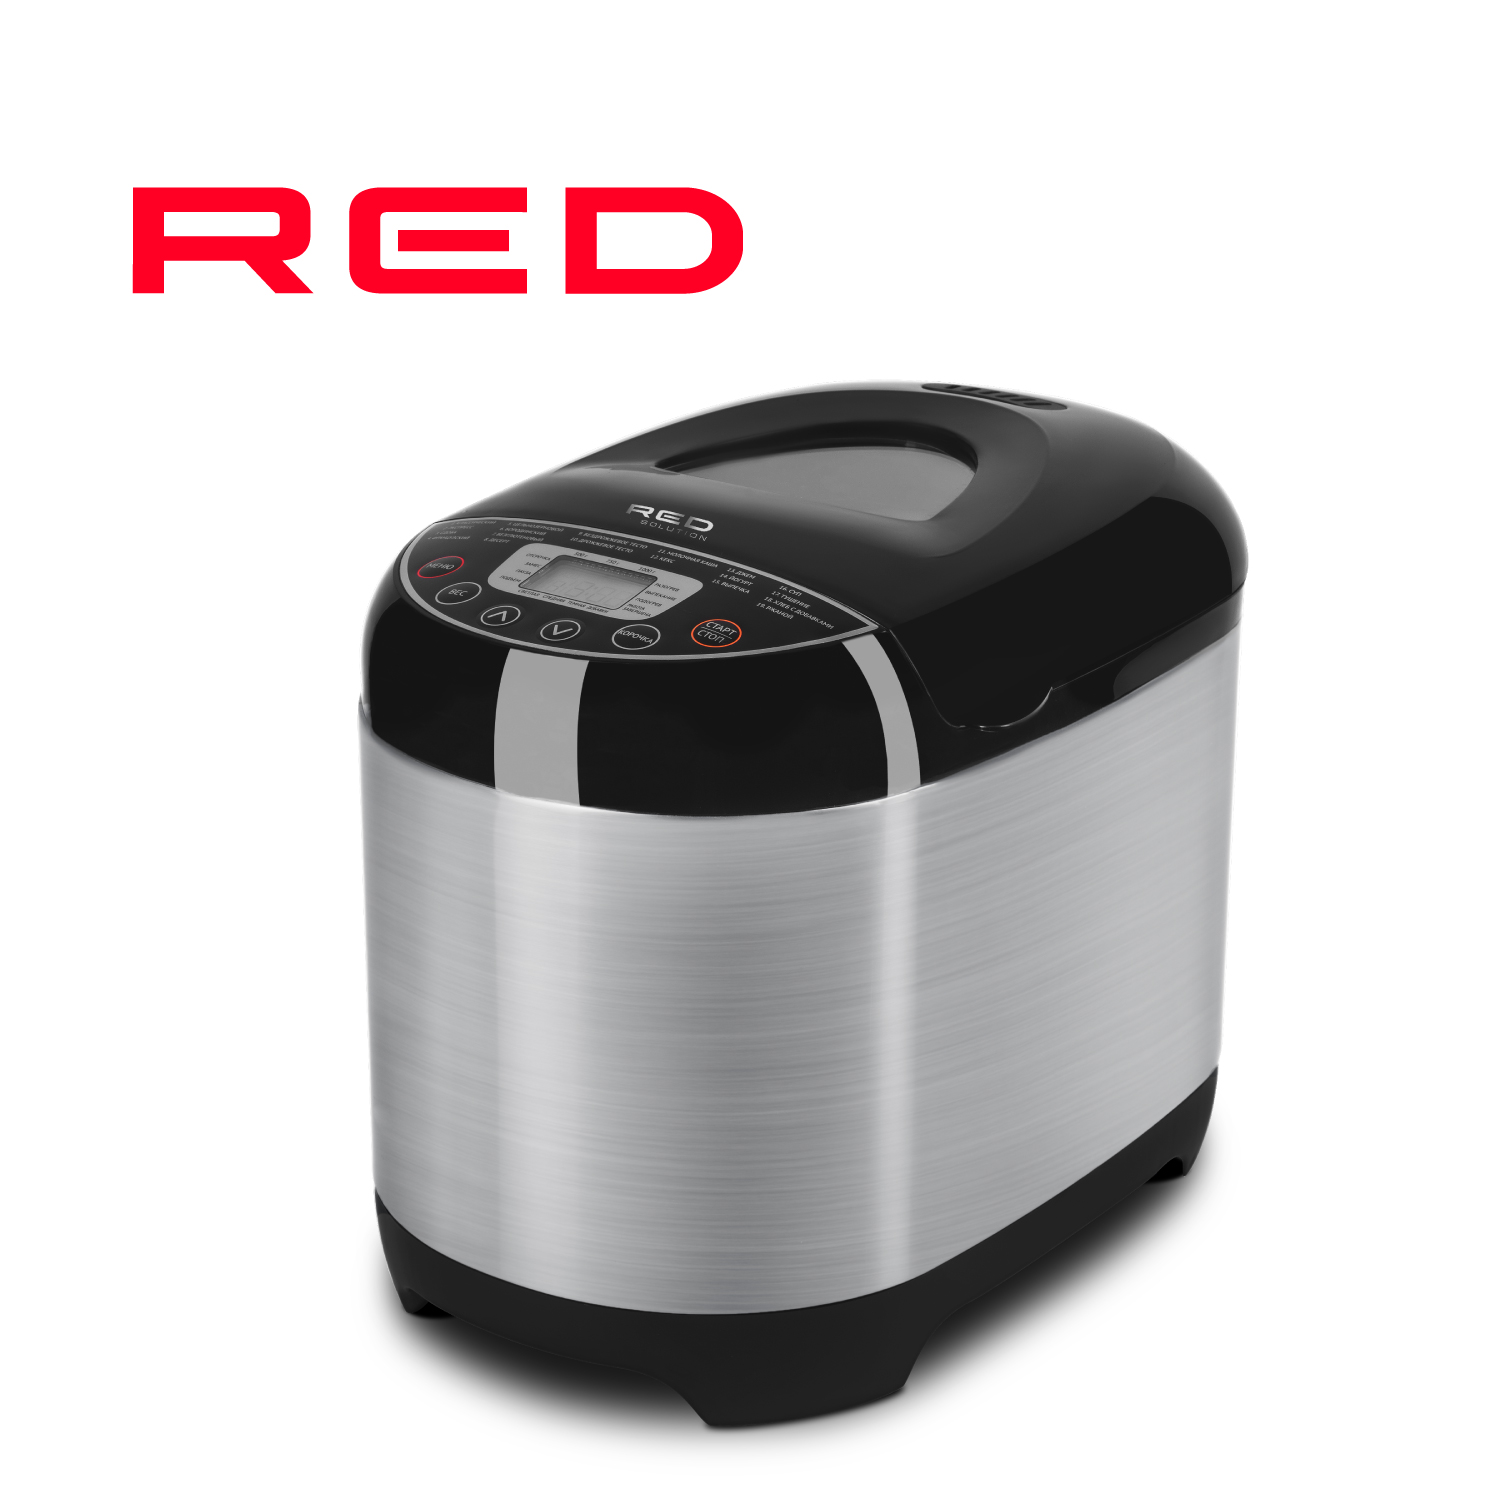 Хлебопечка RED SOLUTION RBM-M1911 серебристый, серый, черный электромясорубка red solution rmg m1250 8 400 вт серебристый